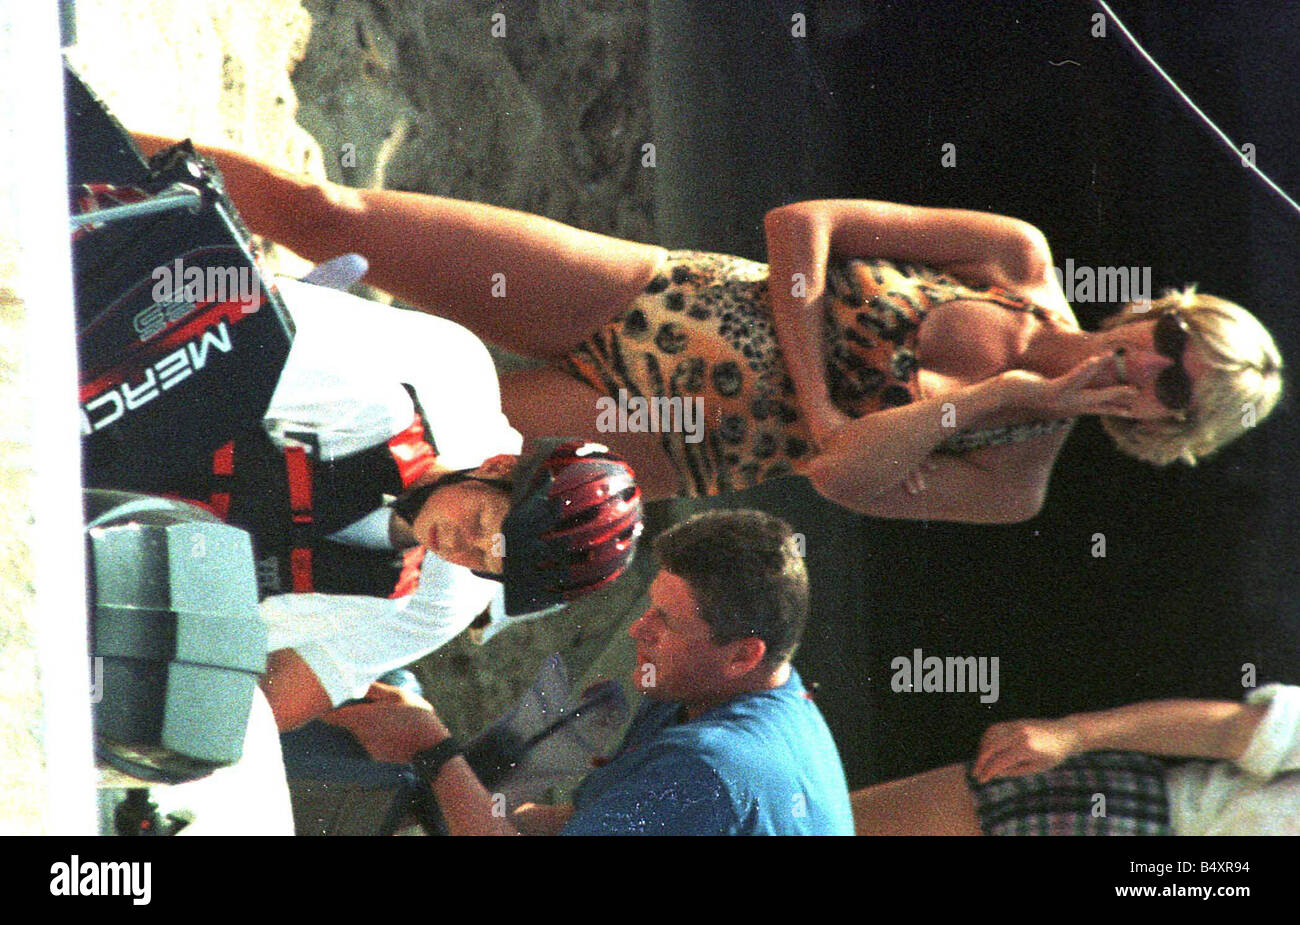 La princesse Diana en vacances à St Tropez en tant qu'invité d'Harrods patron Mohamed Al Fayed Juillet 1997 Banque D'Images